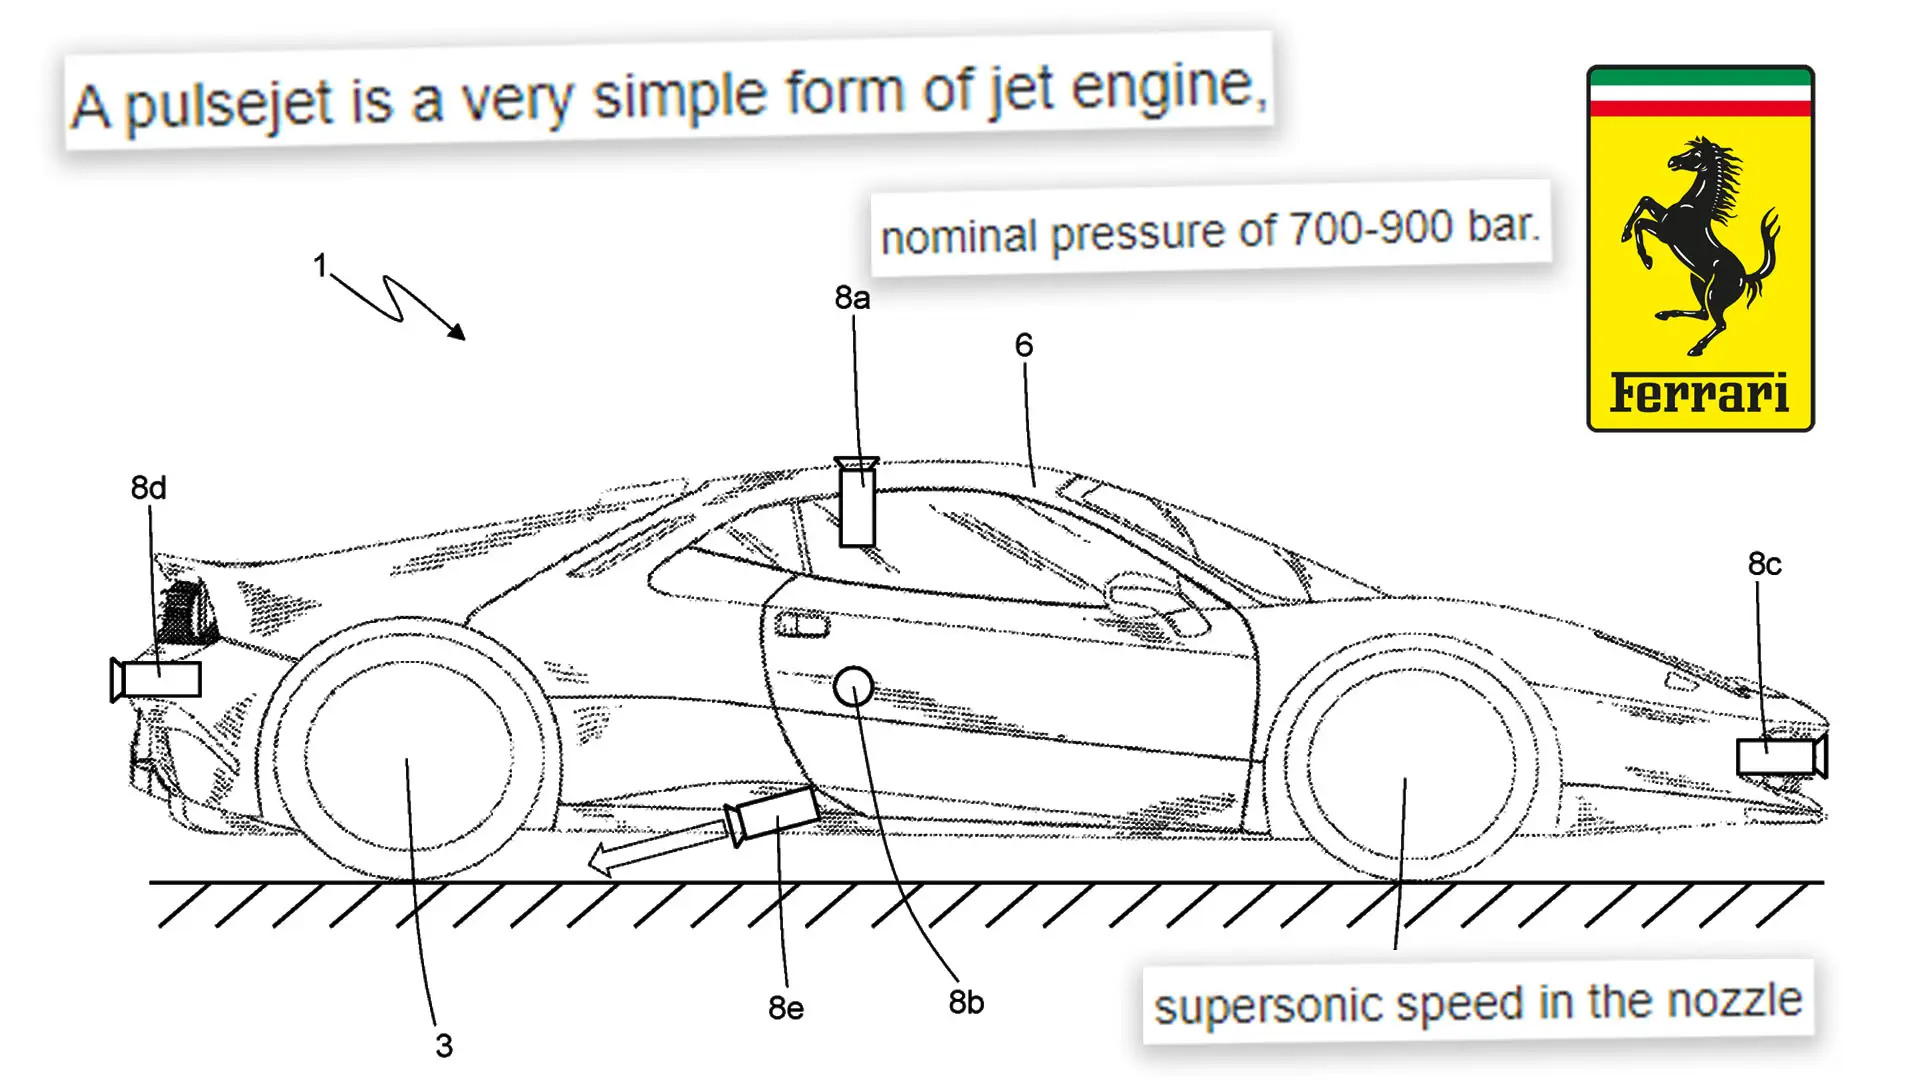 فيراري تقدم براءة اختراع لاستخدام نفاثات في سياراتها مثل تيسلا رودستر 1